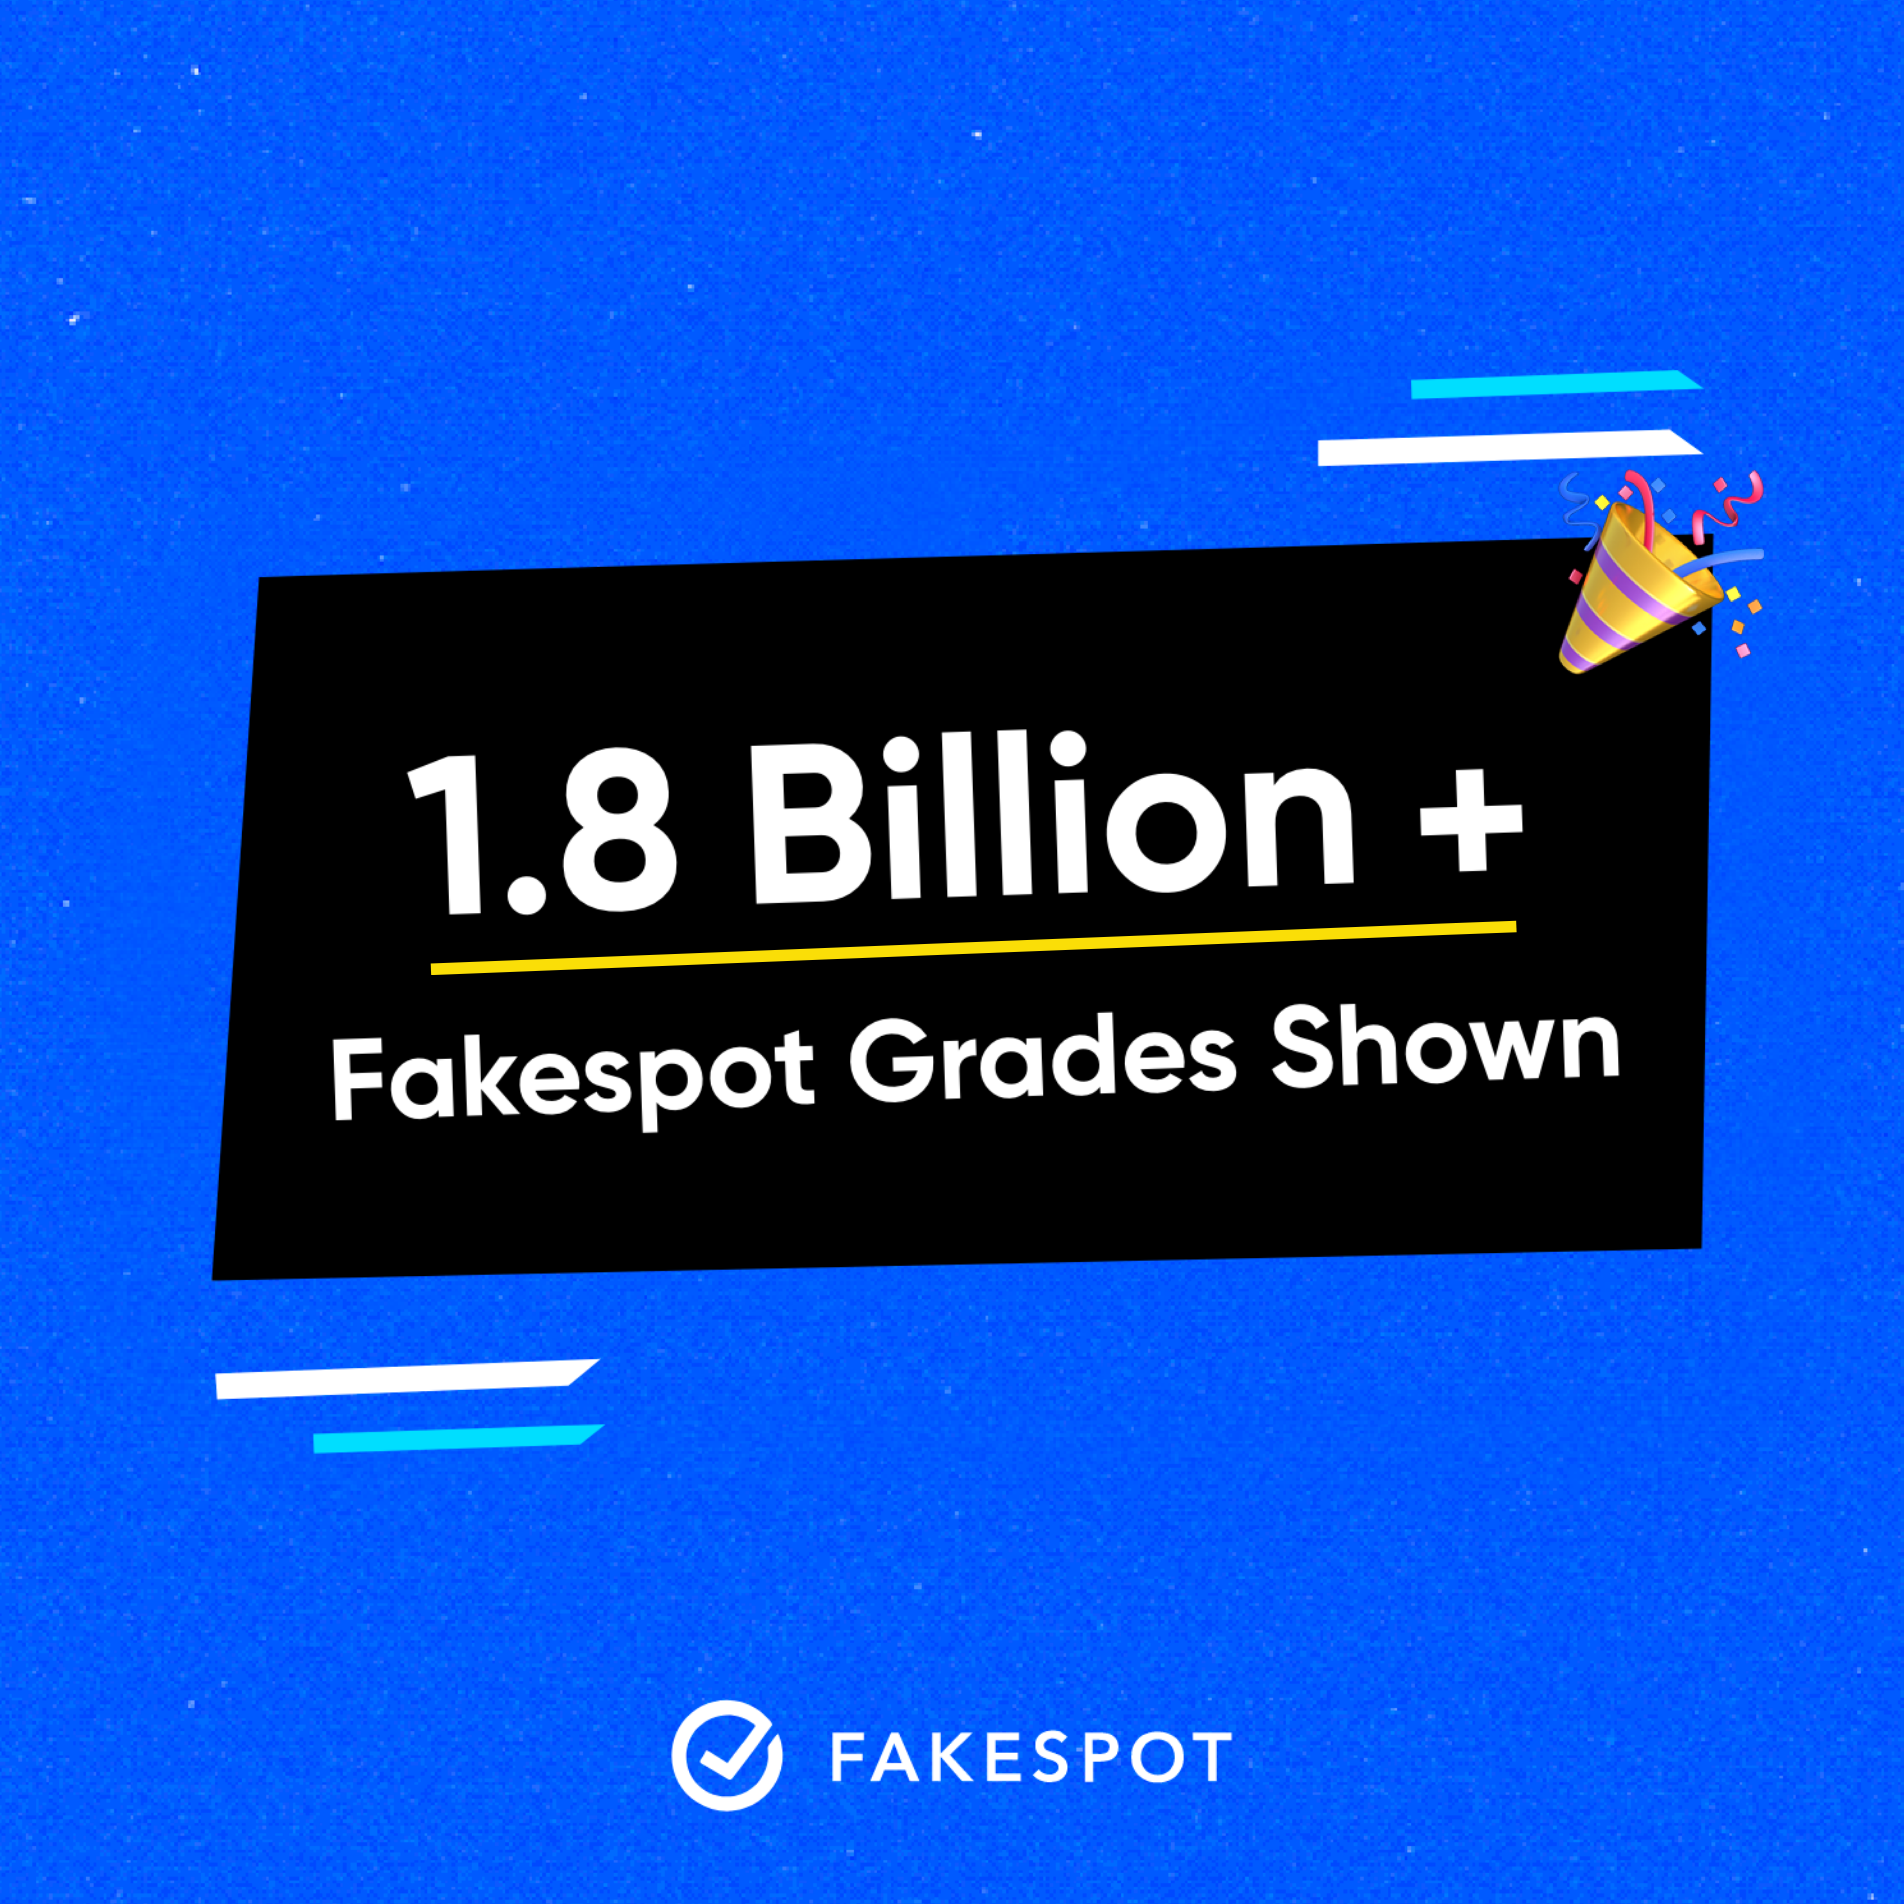 1.8 Billion Fakespot Grades Displayed in 2021